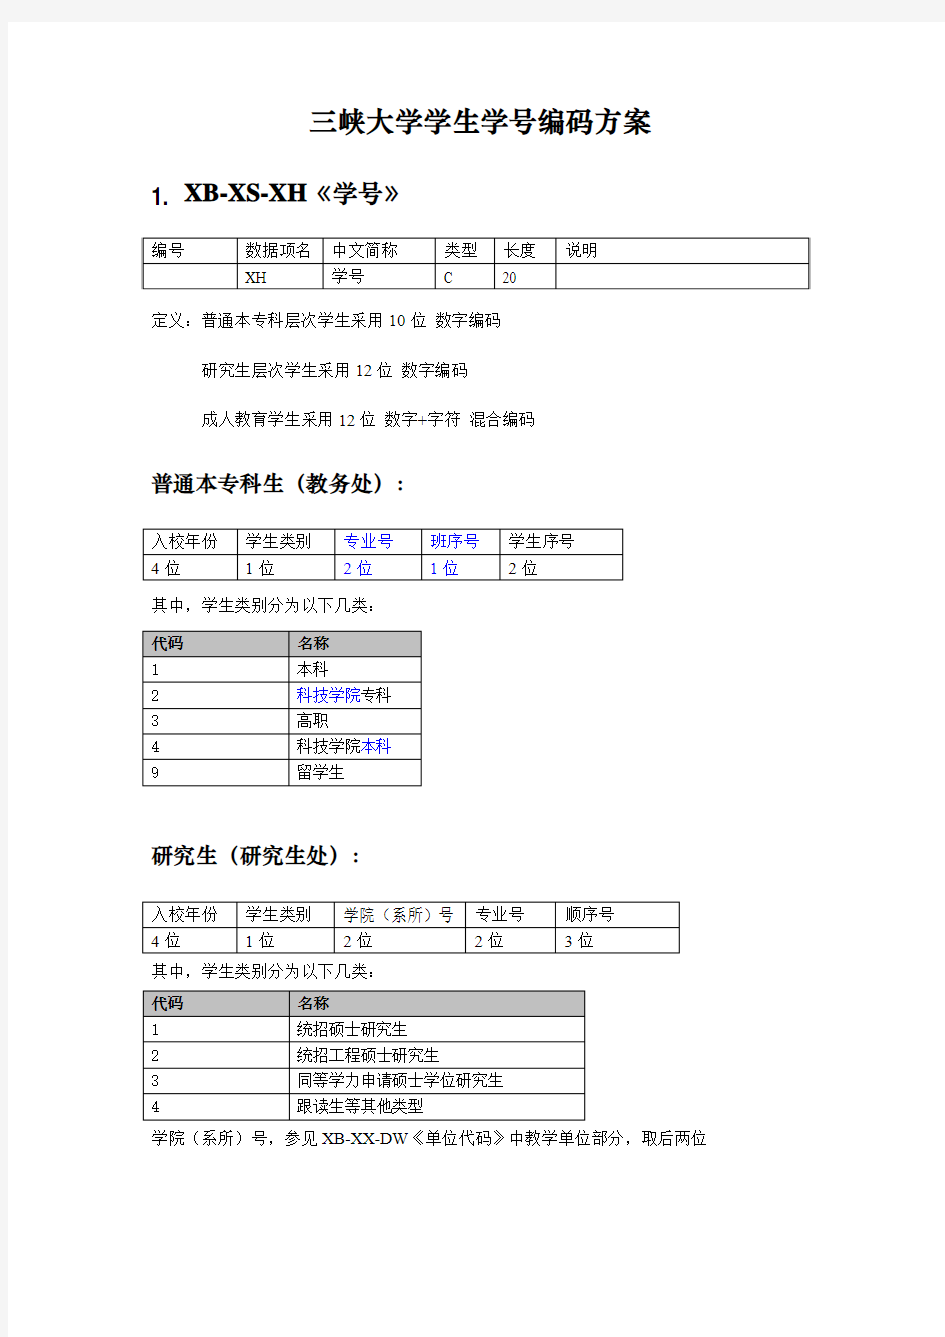 三峡大学_学生学号编码方案(建议版)